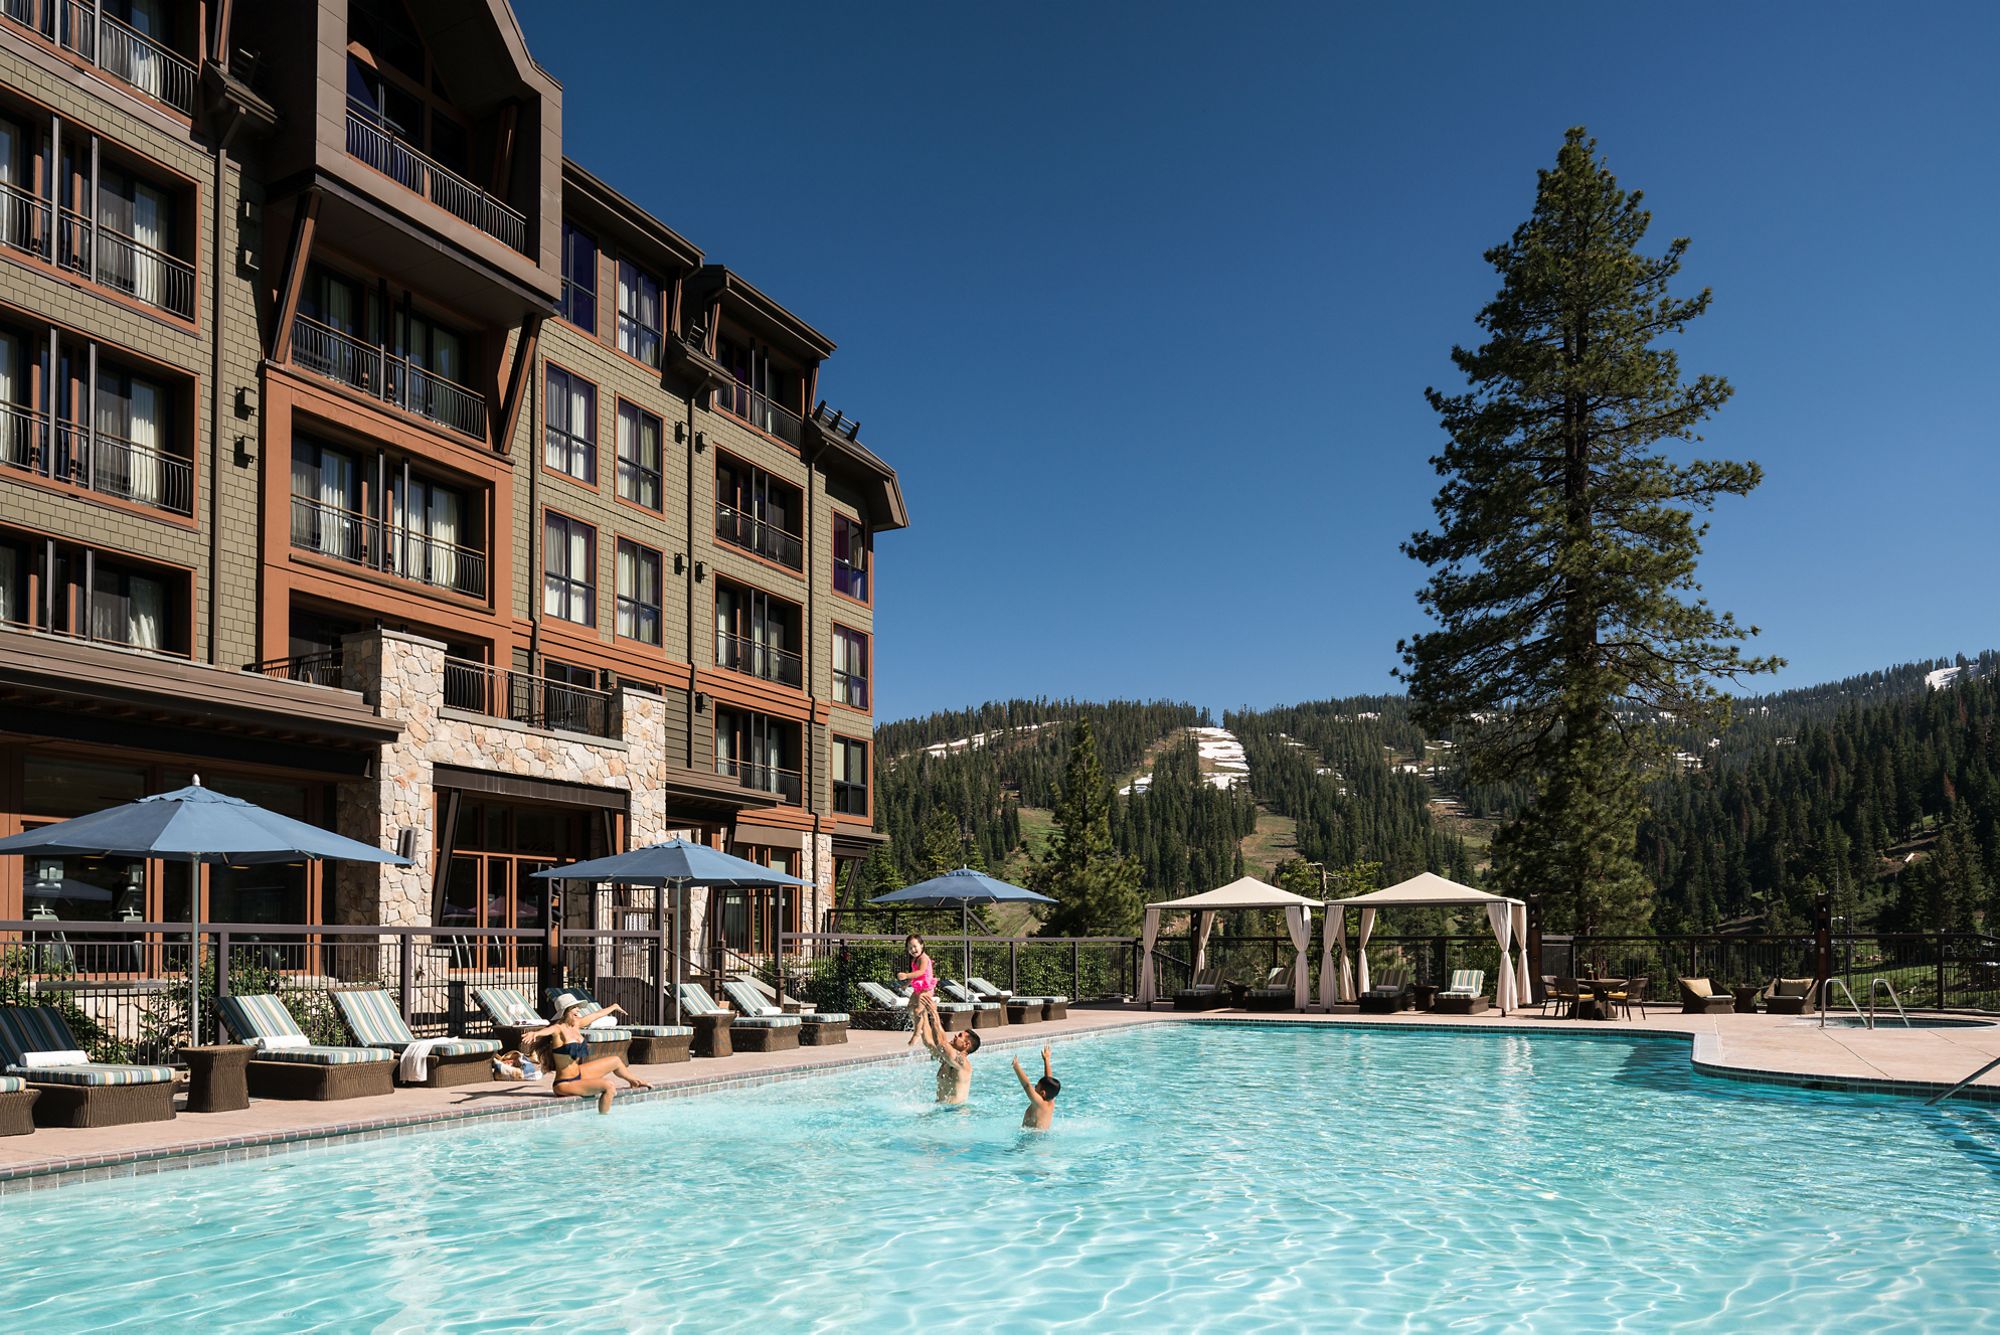 Hotels In North Lake Tahoe North Lake Tahoe Resorts The Ritz Carlton Lake Tahoe